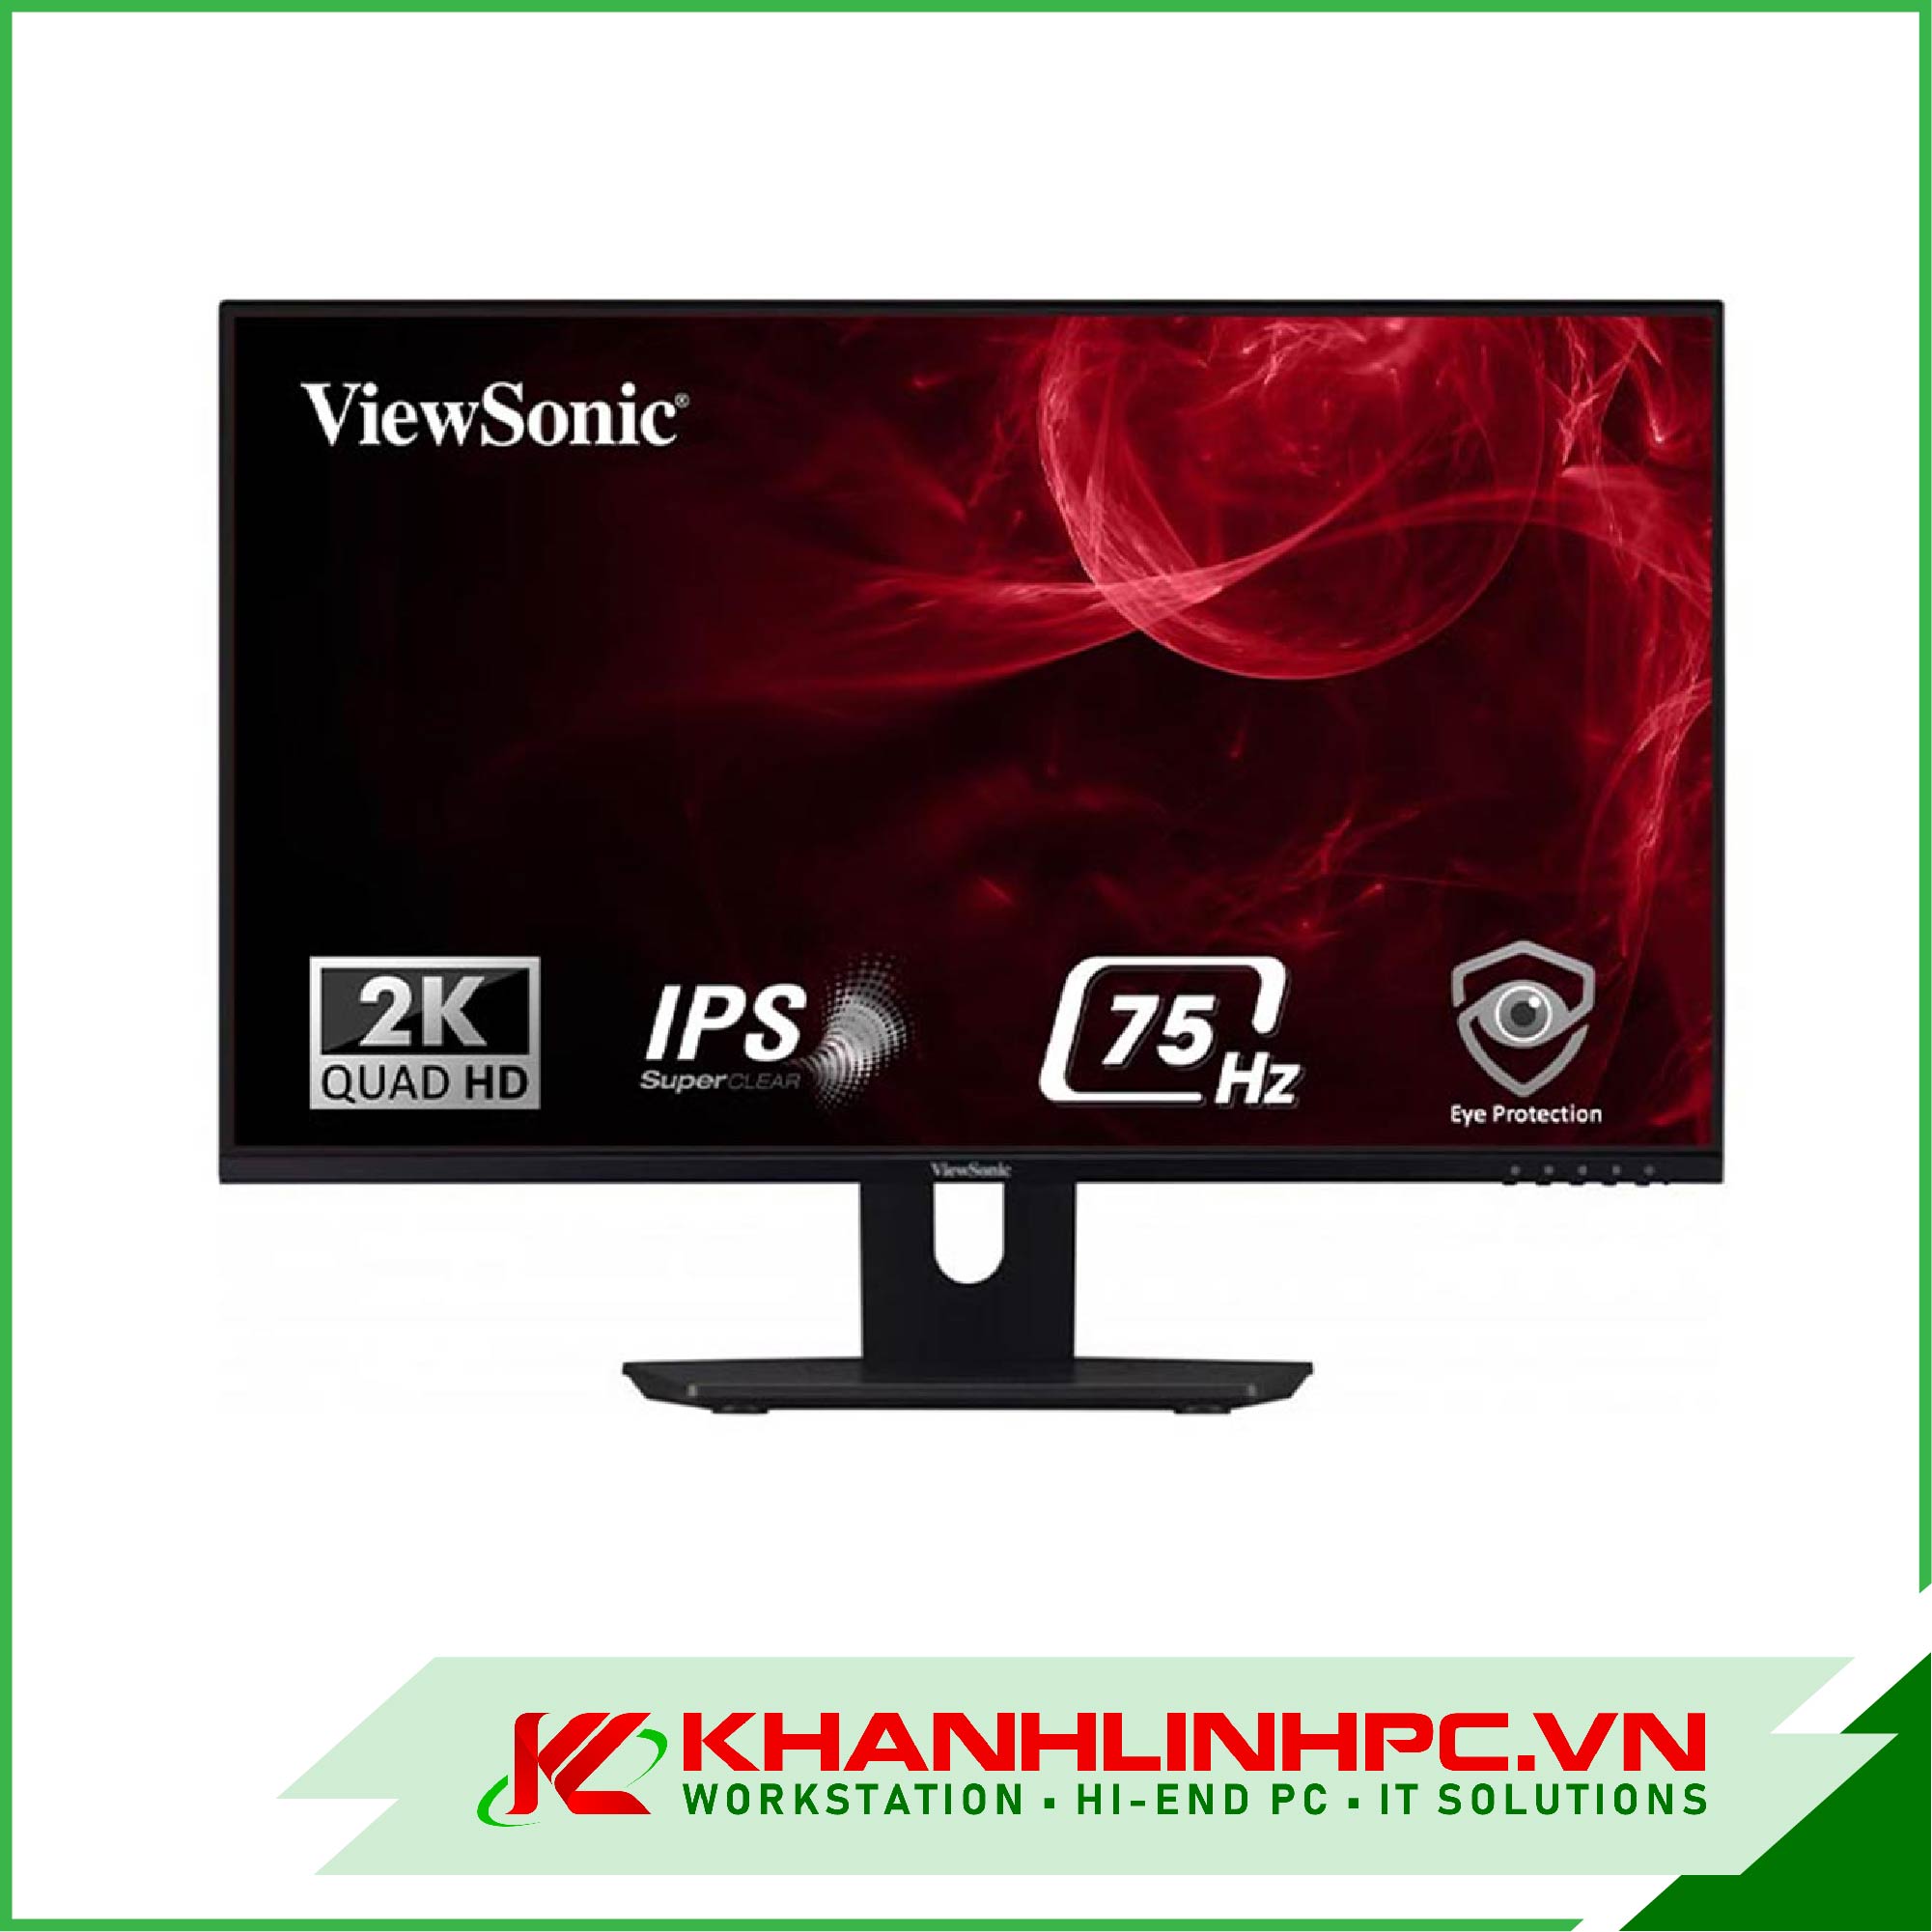 viewsonic vx2480-2k-shd (qhd ips 24inch 75hz)